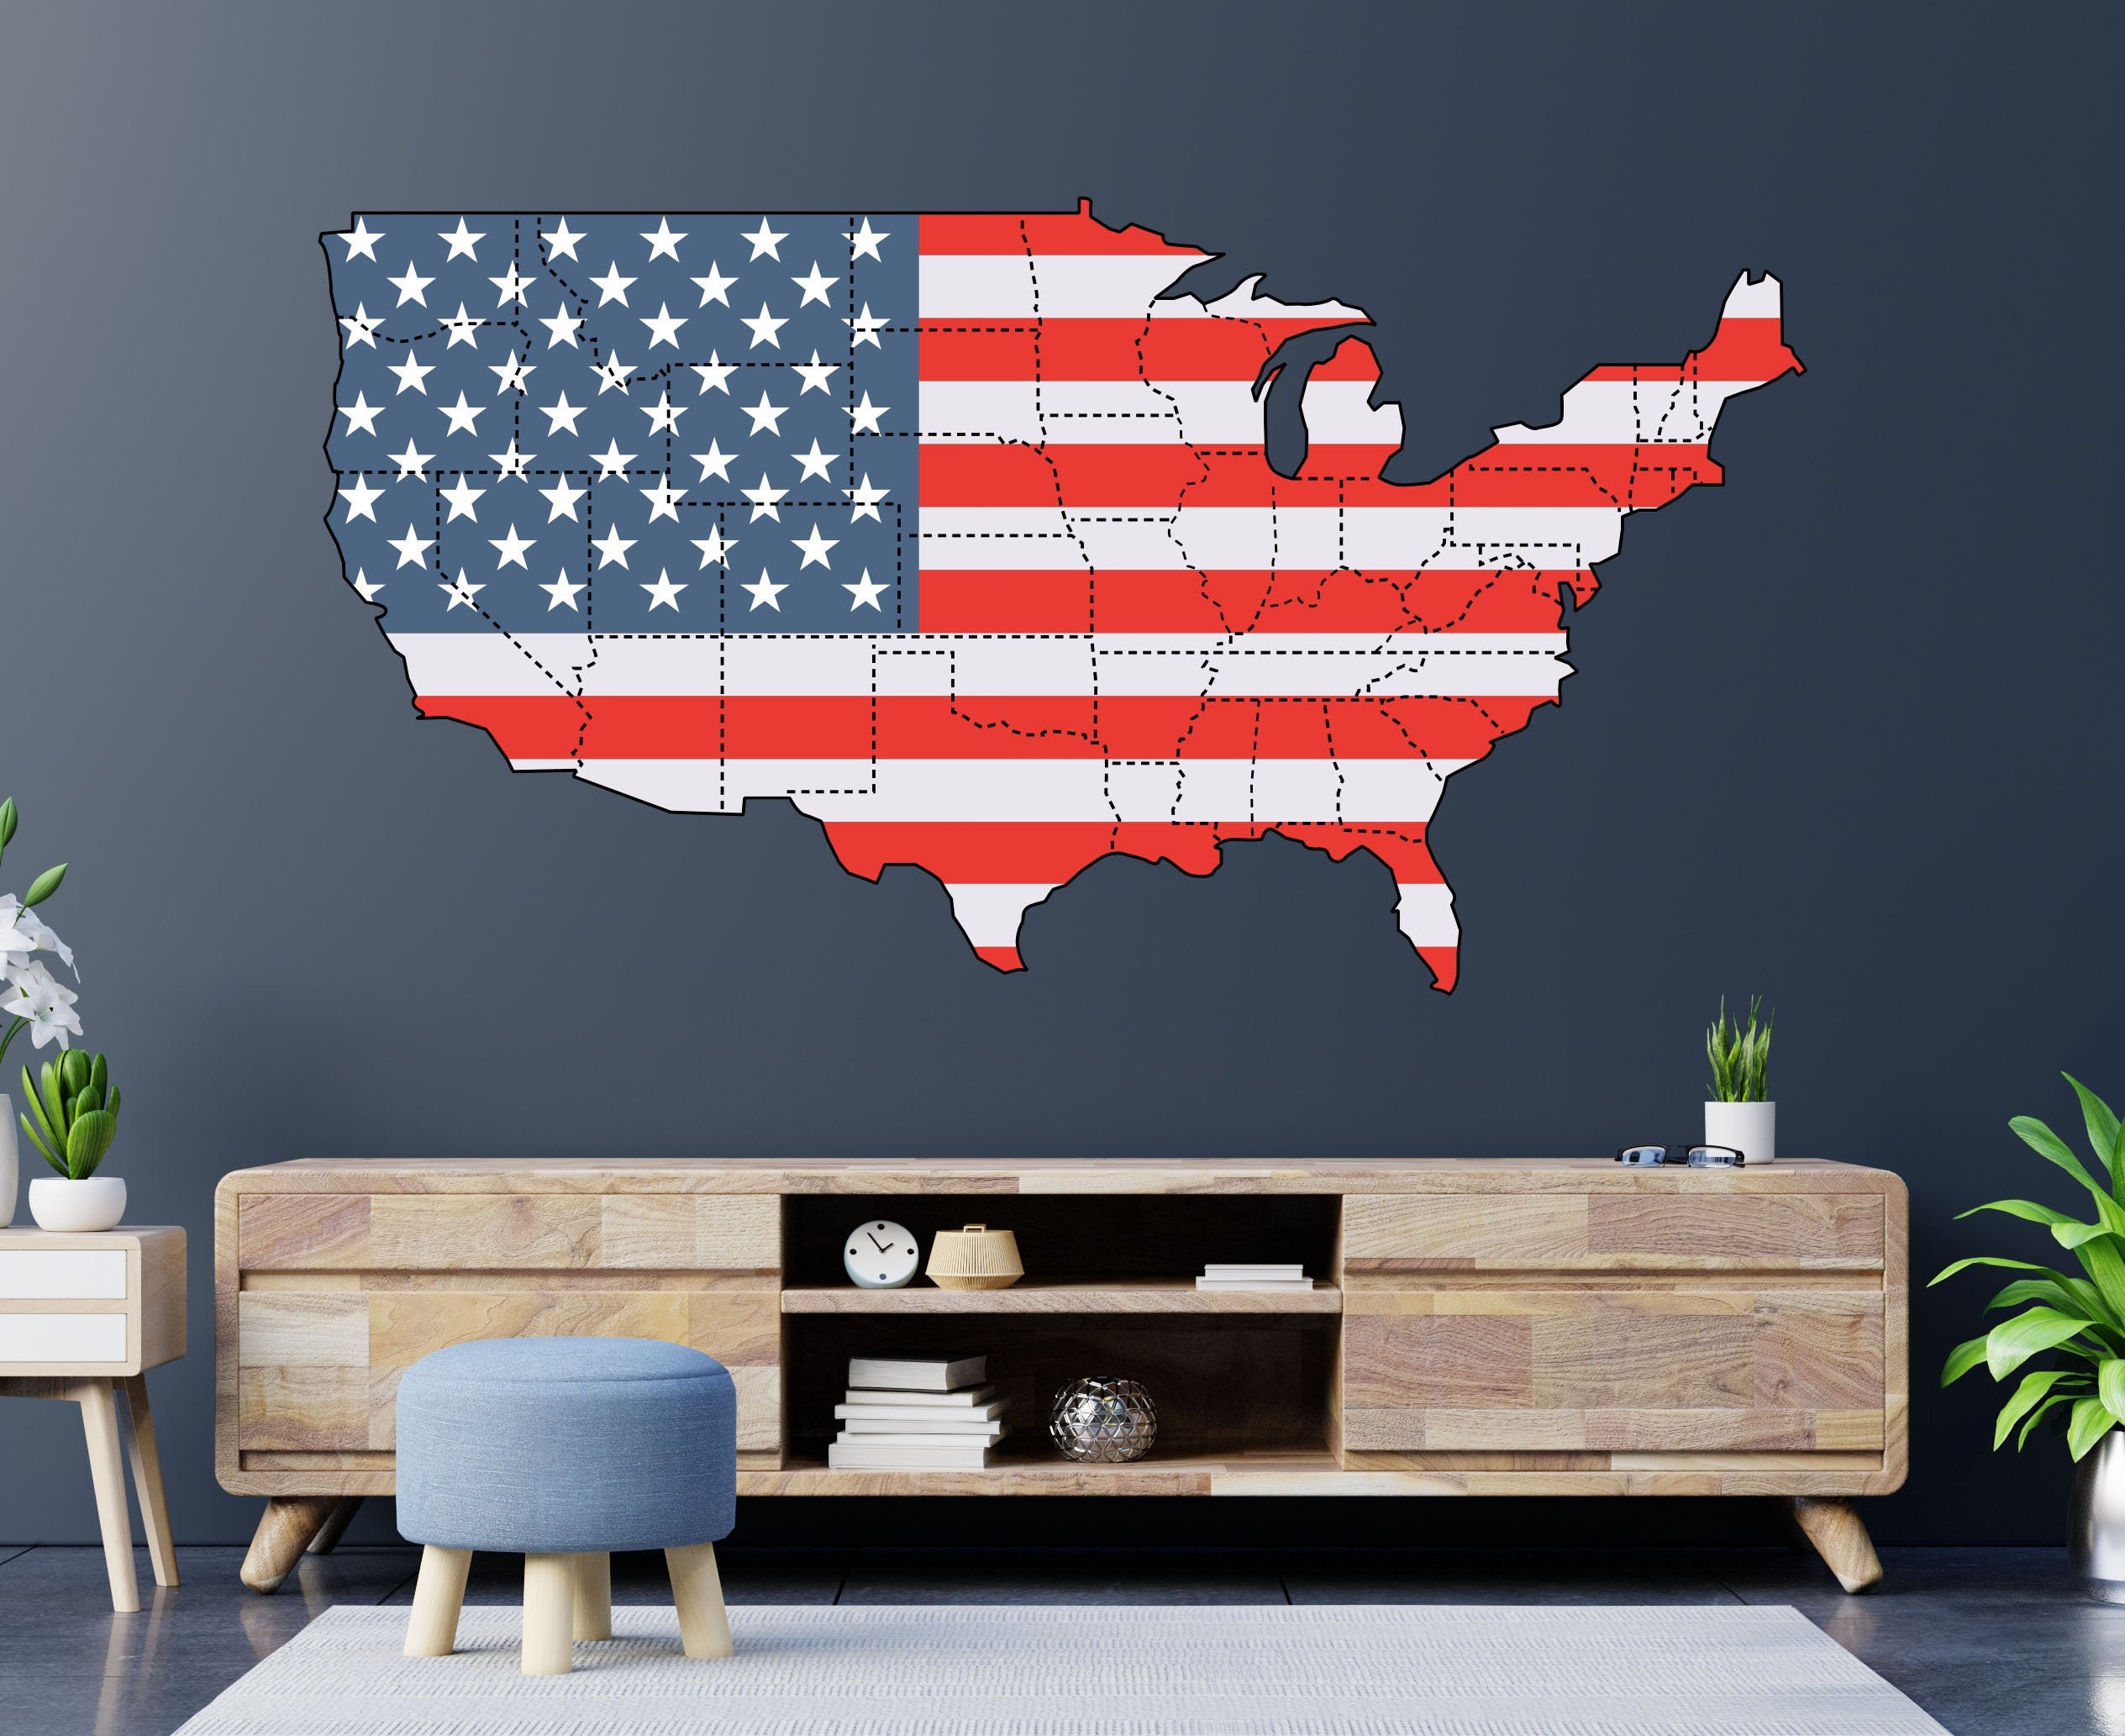 Wallies Wall Decals, U.S. Map Wall Sticker : : Home Improvement